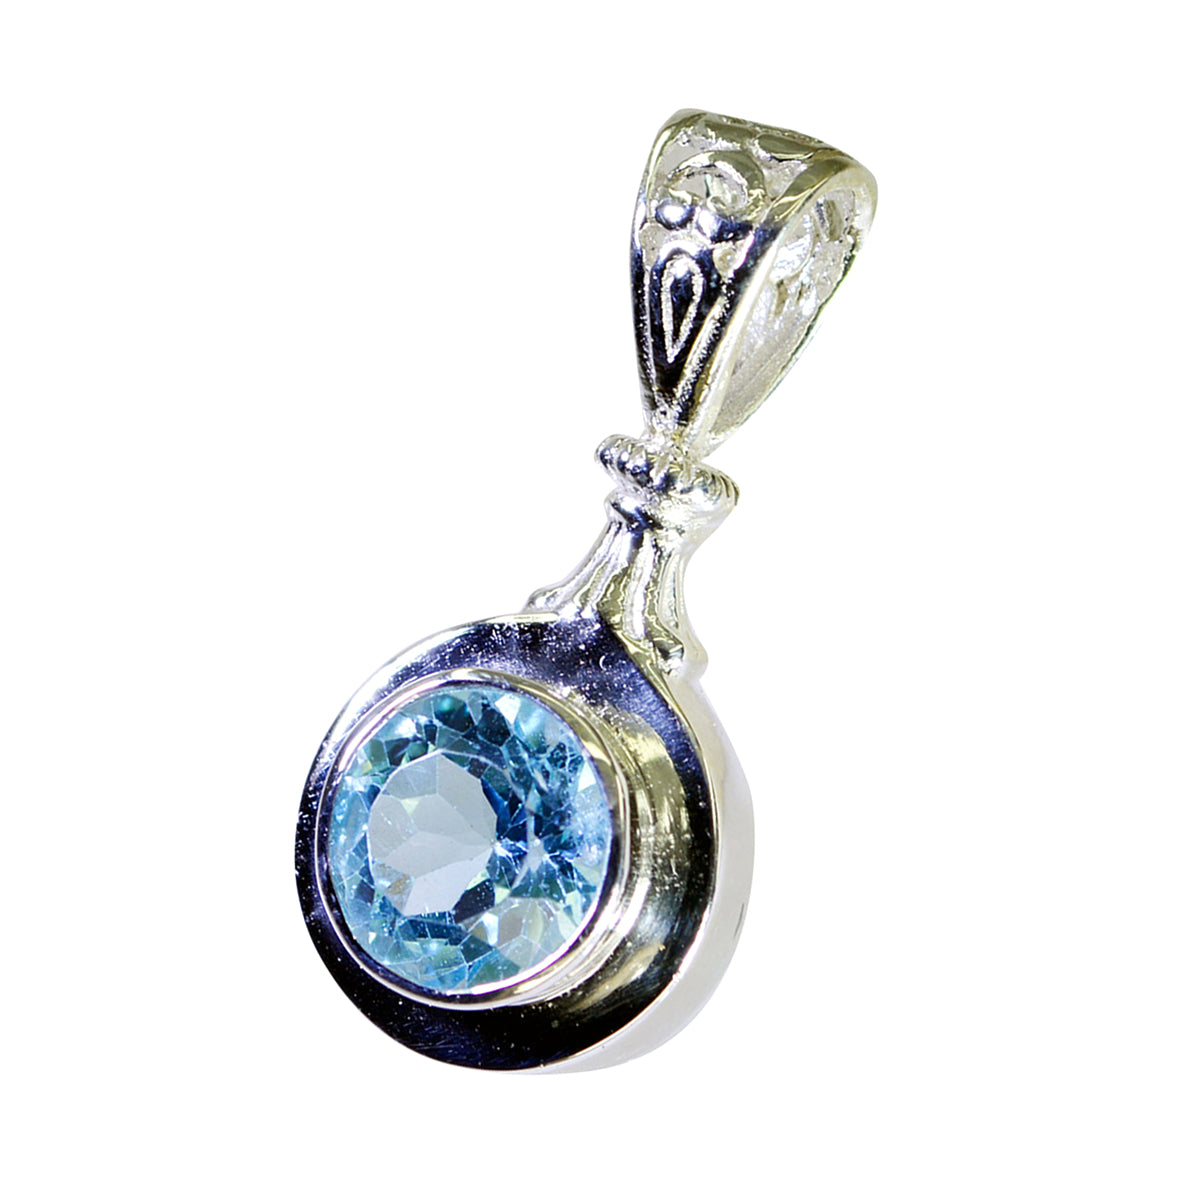 Riyo mignon pendentif rond en argent sterling avec topaze bleue à facettes, cadeau pour femme